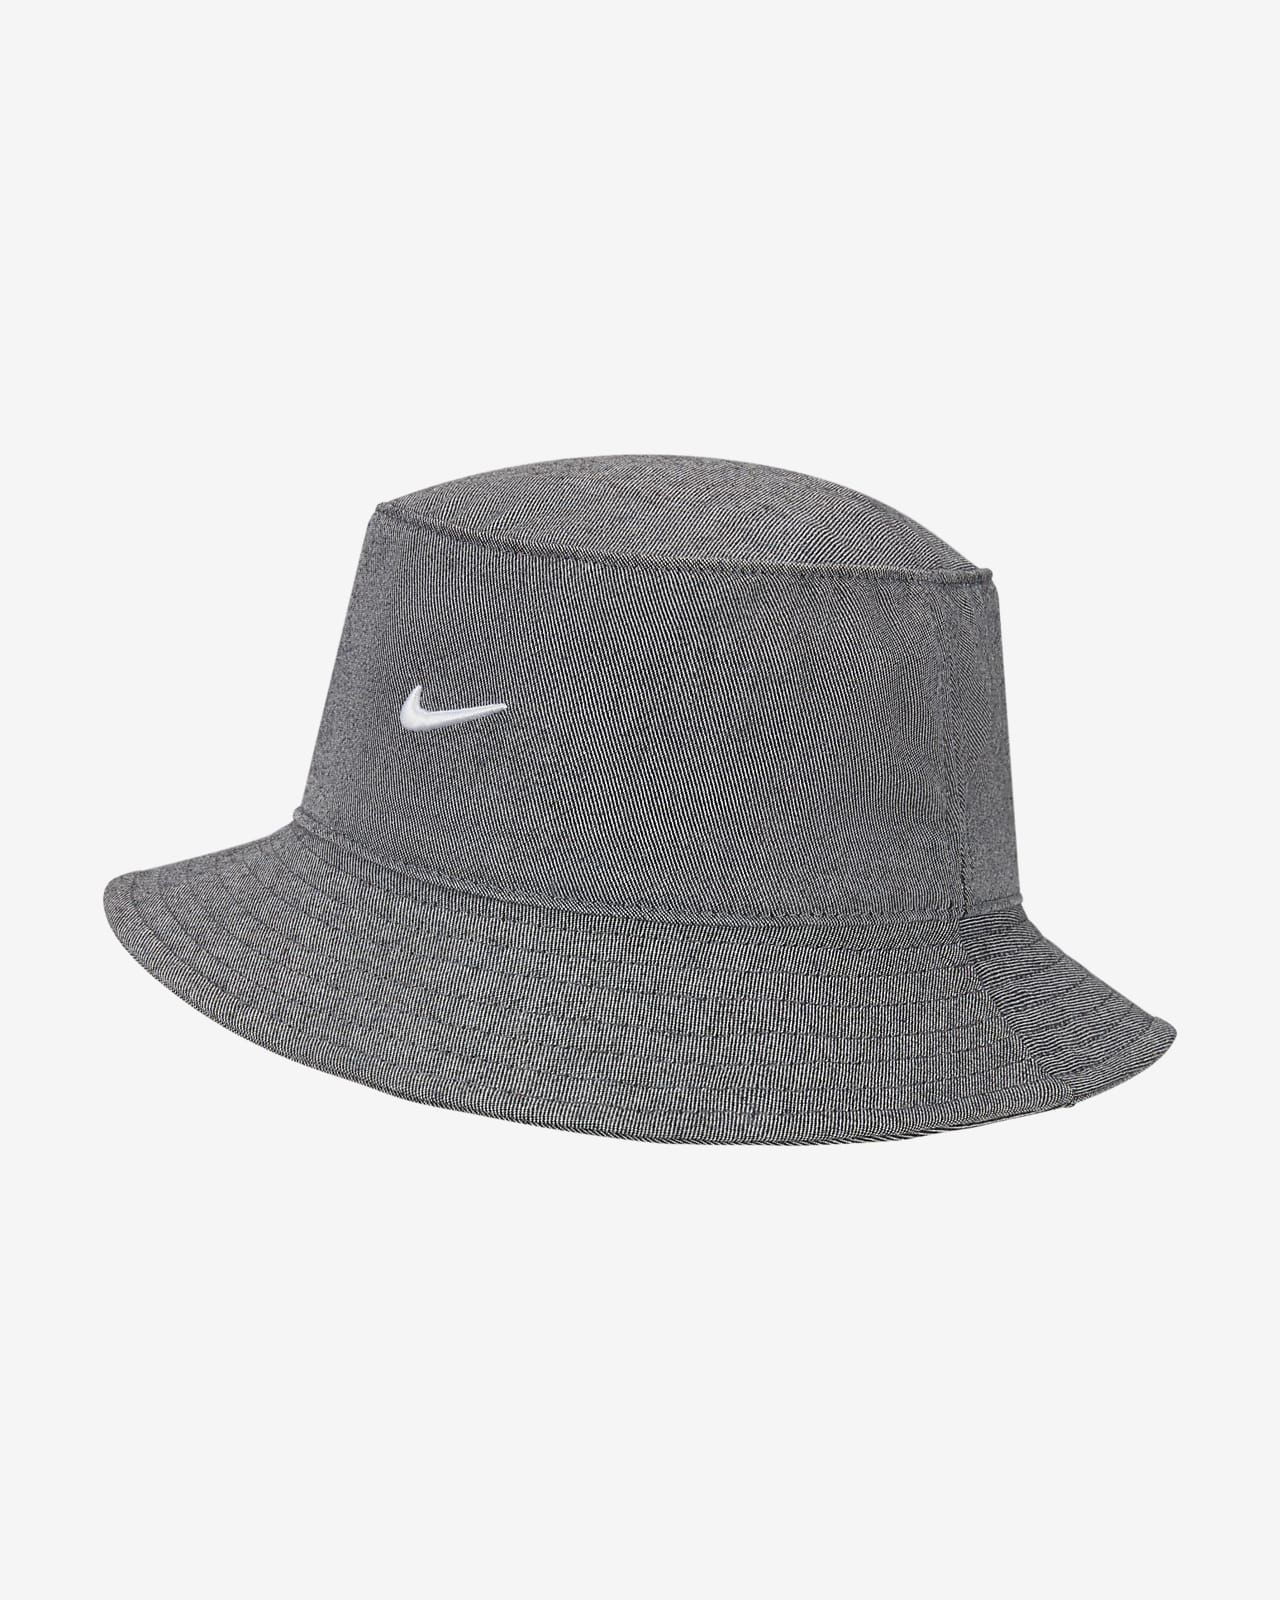 Nike Sportswear Bucket Hat. Nike.com | Nike (US)